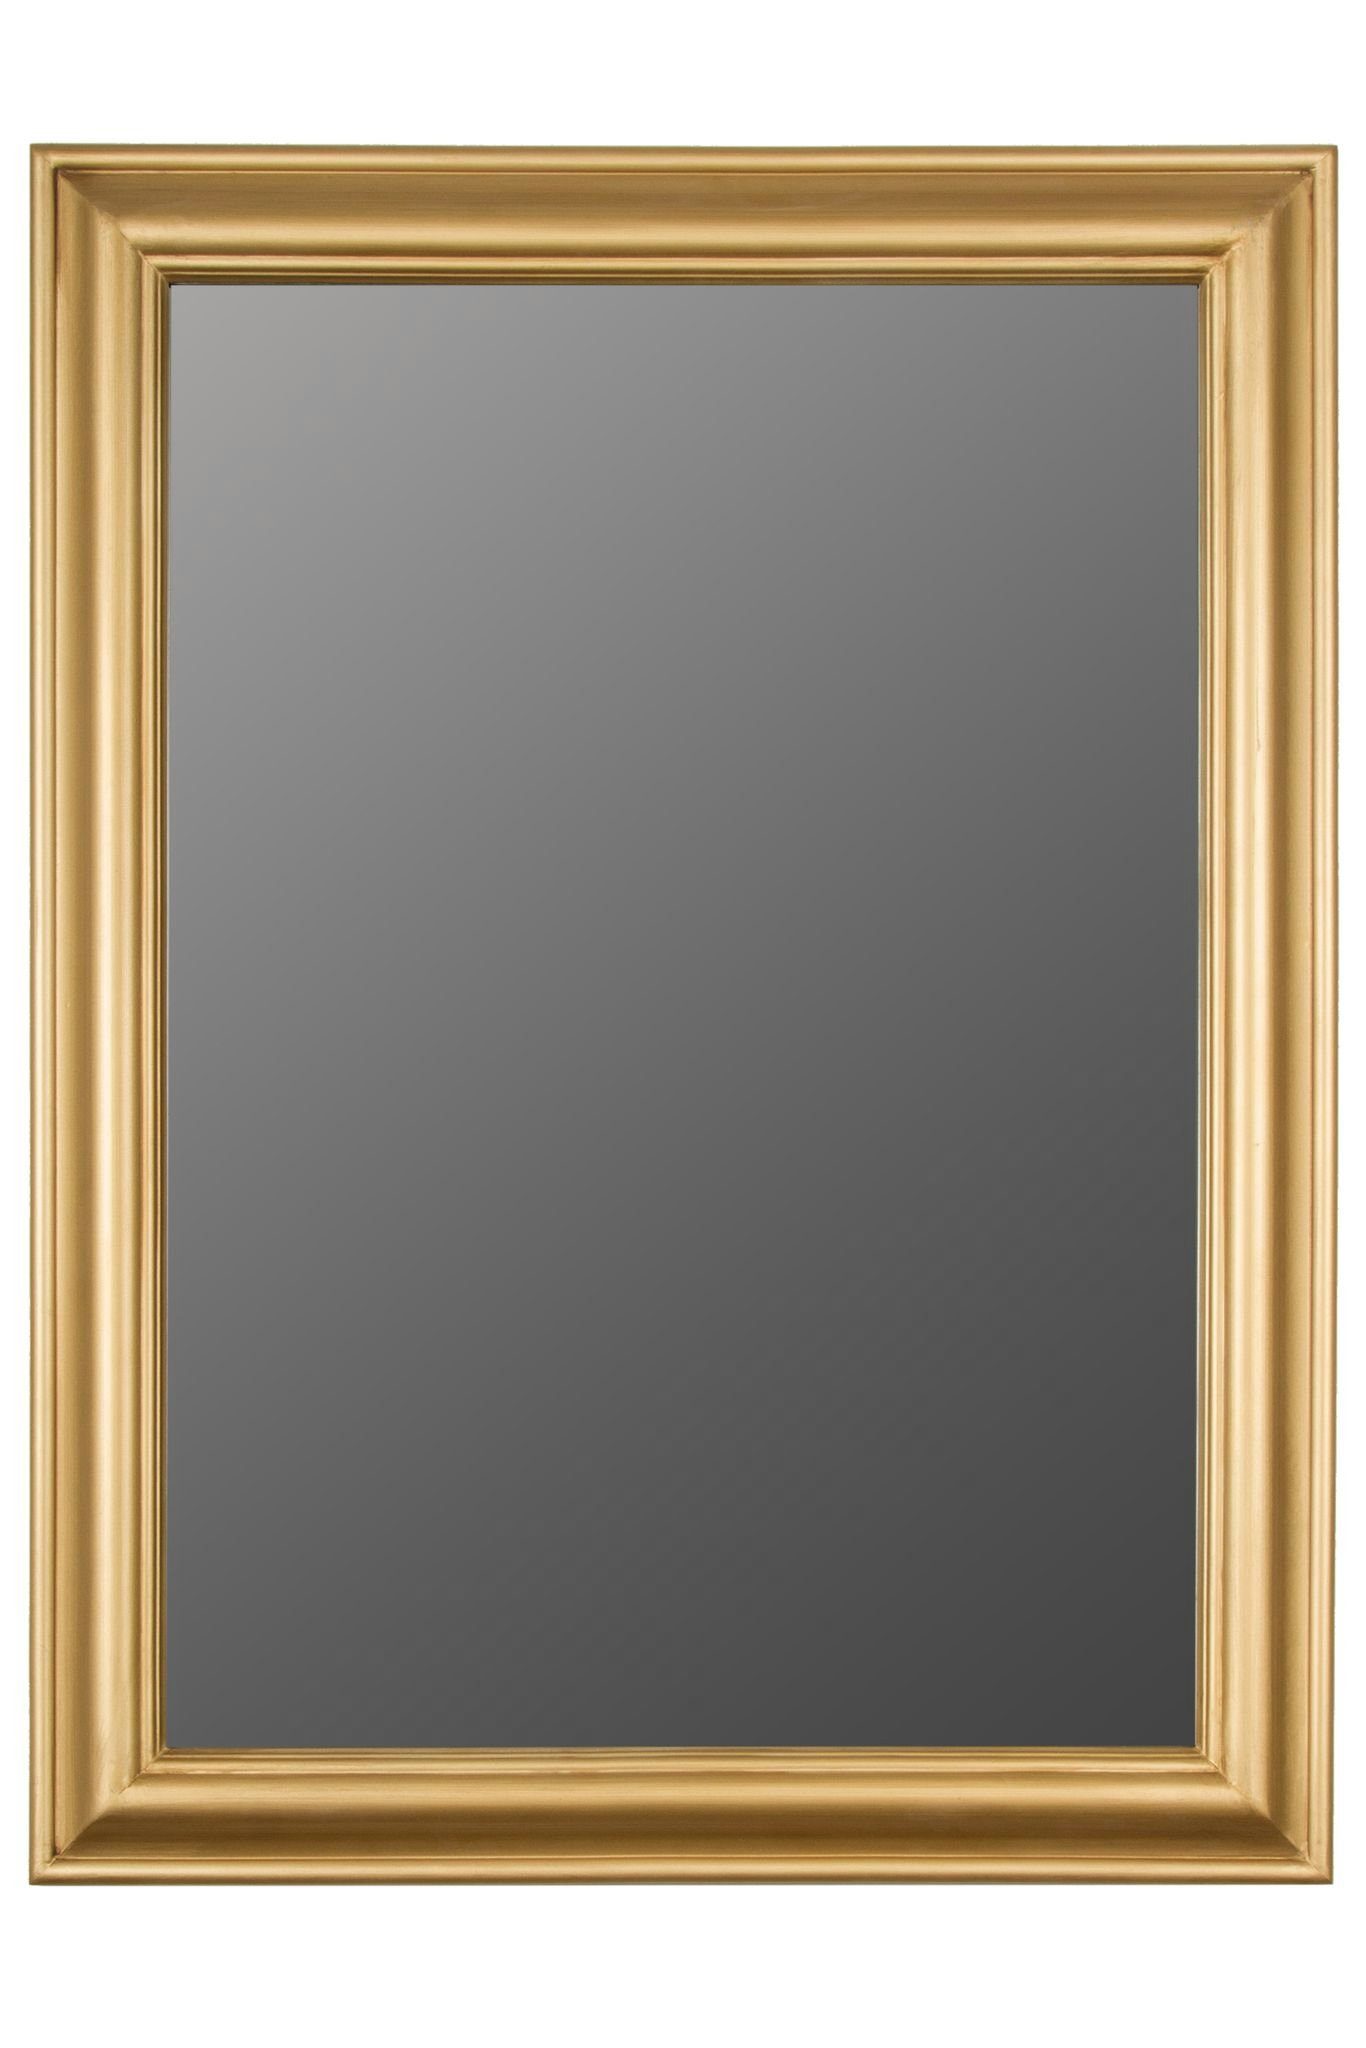 elbmöbel Wandspiegel Spiegel gold schlicht, Wandspiegel: Holzrahmen Gold 82x62x7 cm eleganter Spiegel Landhausstil Gold | antik Gold